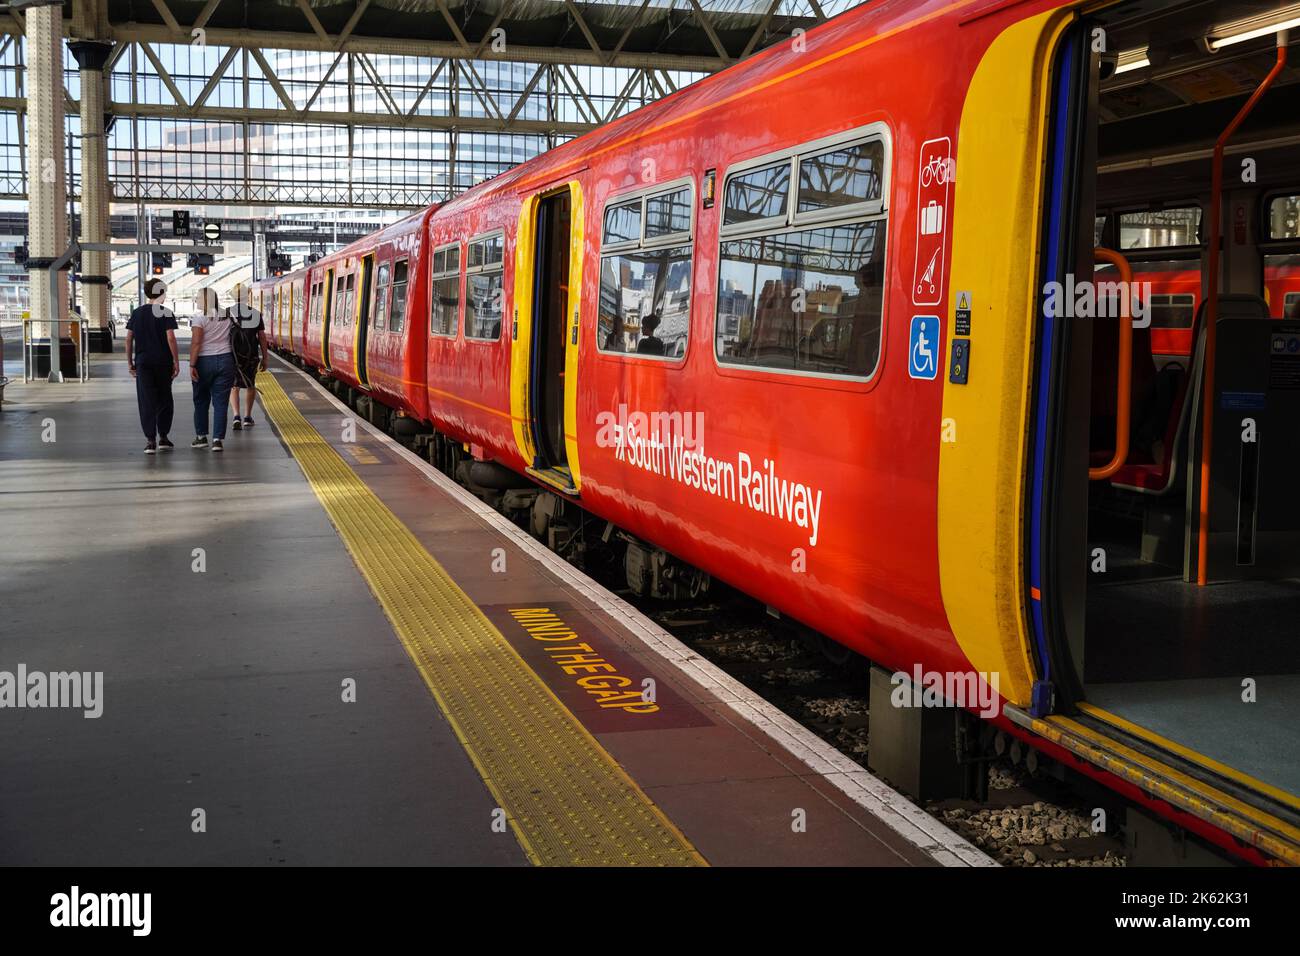 Treno della ferrovia sud-occidentale a London Waterloo, Inghilterra Regno Unito Foto Stock